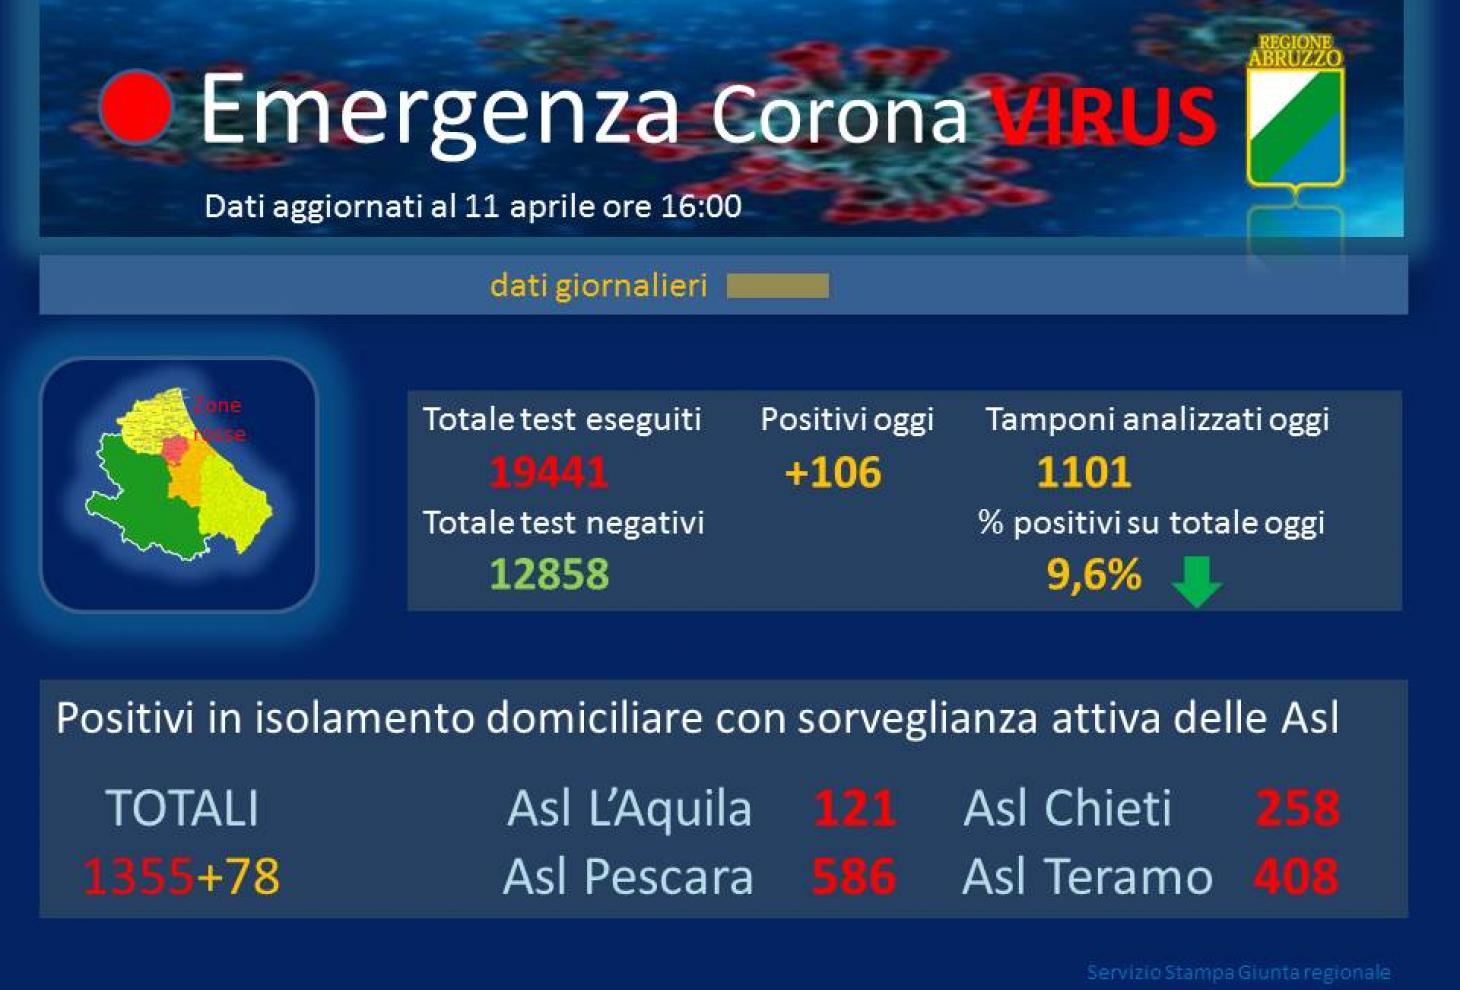 Coronavirus Abruzzo Dati Aggiornati All 11 Aprile Casi Positivi A 21 Regione Abruzzo